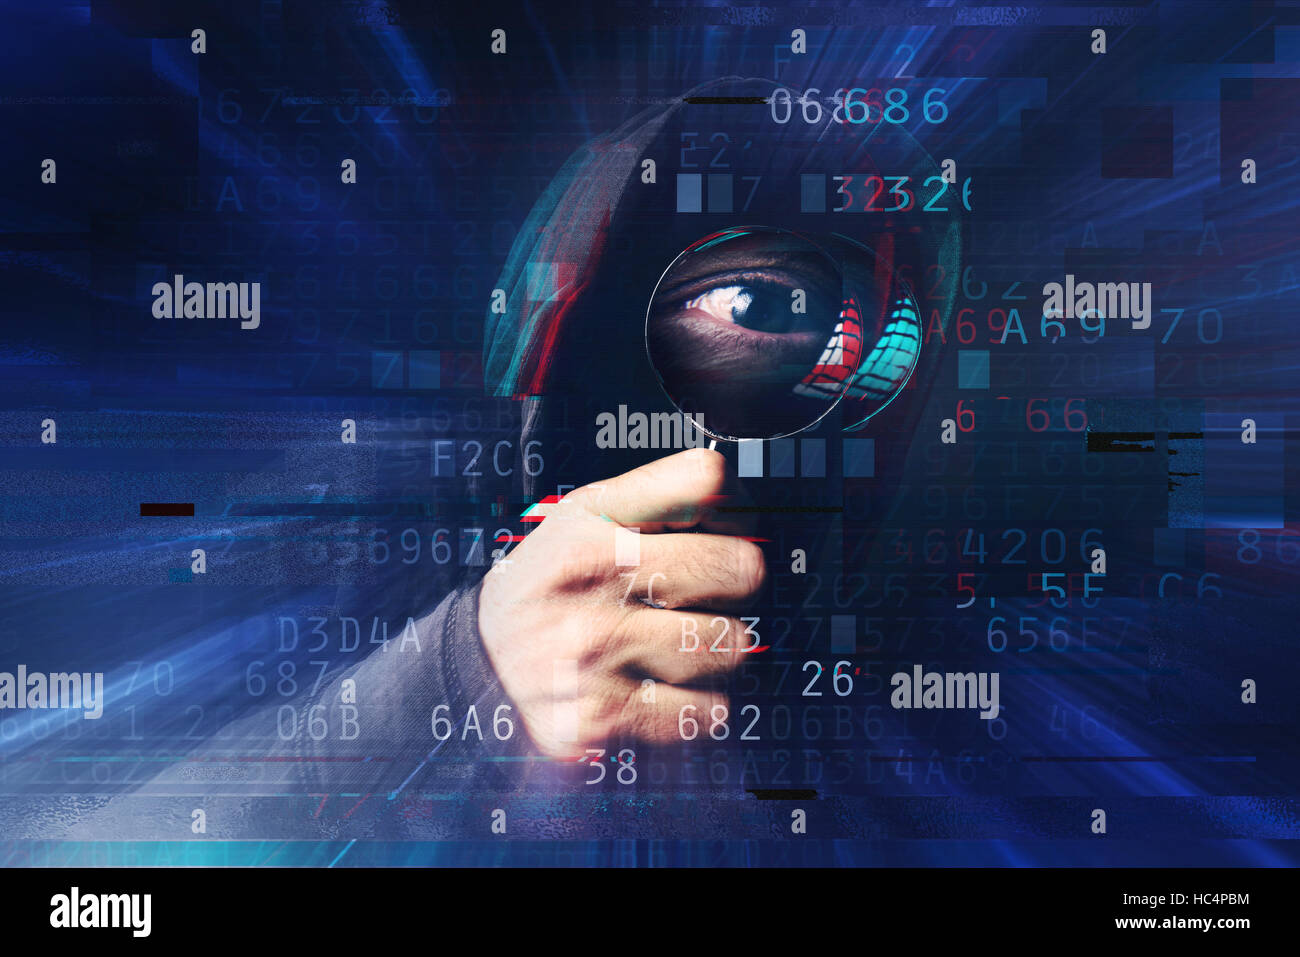 Spyware e concetto ransomware digitale con effetto di glitch, spooky incappucciati hacker con lente di ingrandimento al furto di identità online nad hacking abbiamo personale Foto Stock